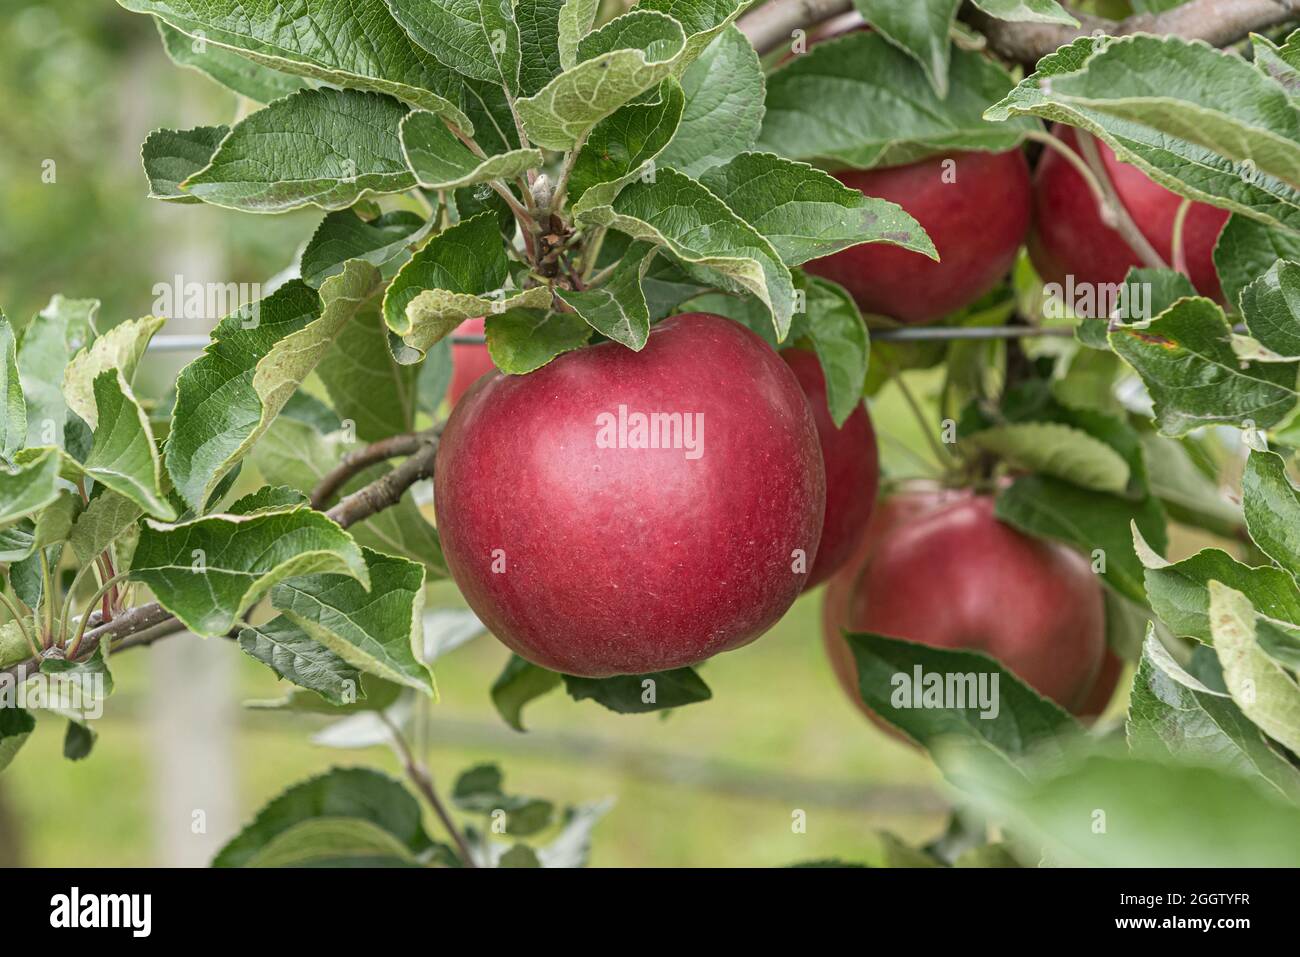 apple (Malus domestica 'Roter Idared', Malus domestica Roter Idared), apples on a tre, cultivar Roter Idared Stock Photo